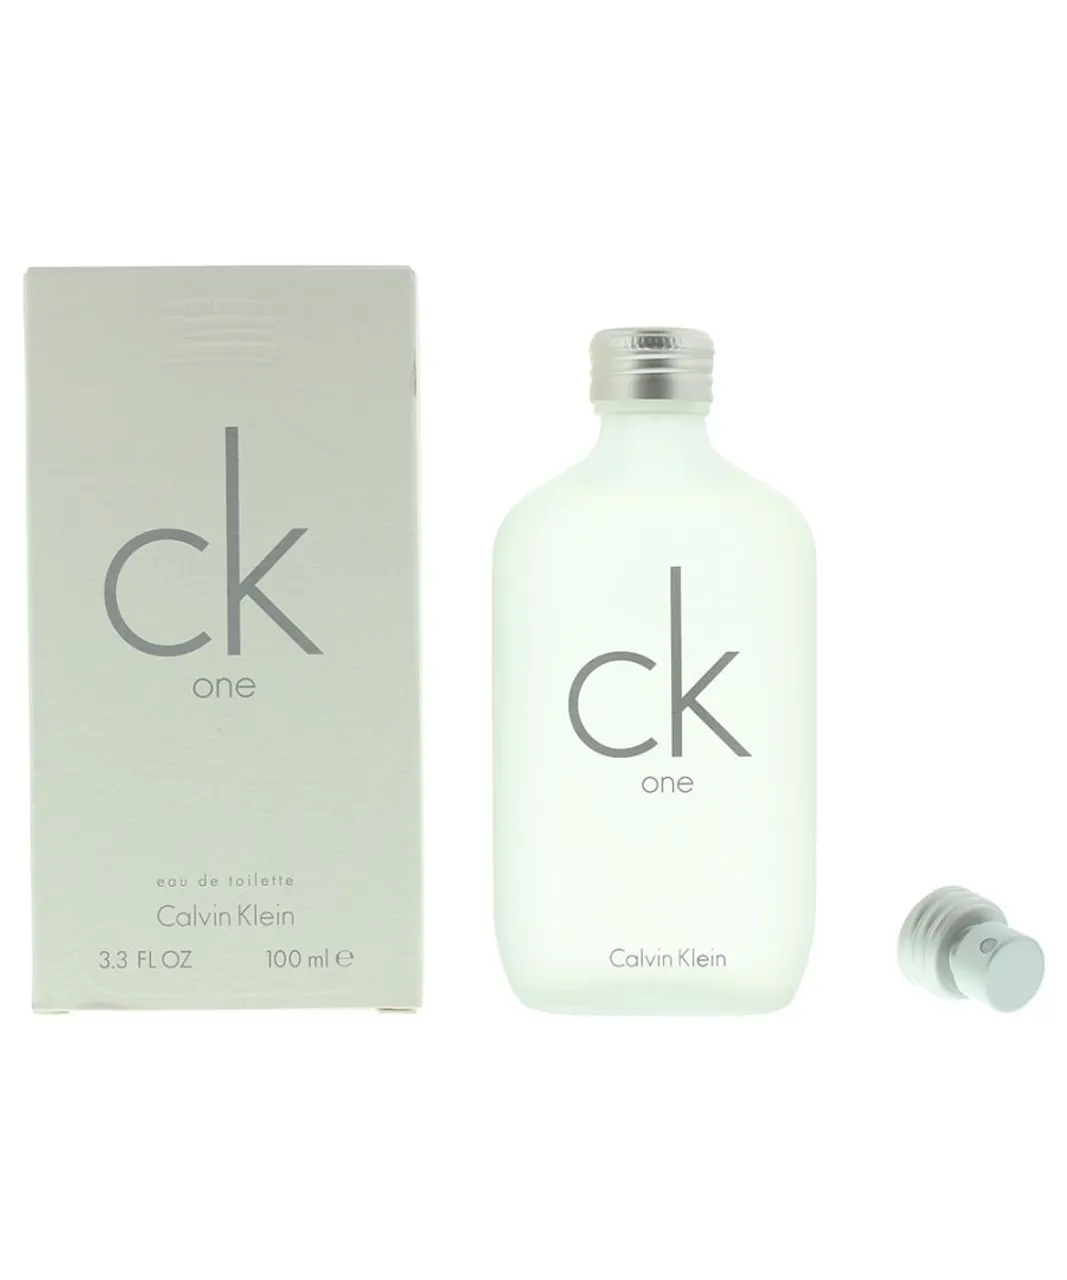 Calvin Klein Unisex Ck One Eau de Toilette 100ml - One Size